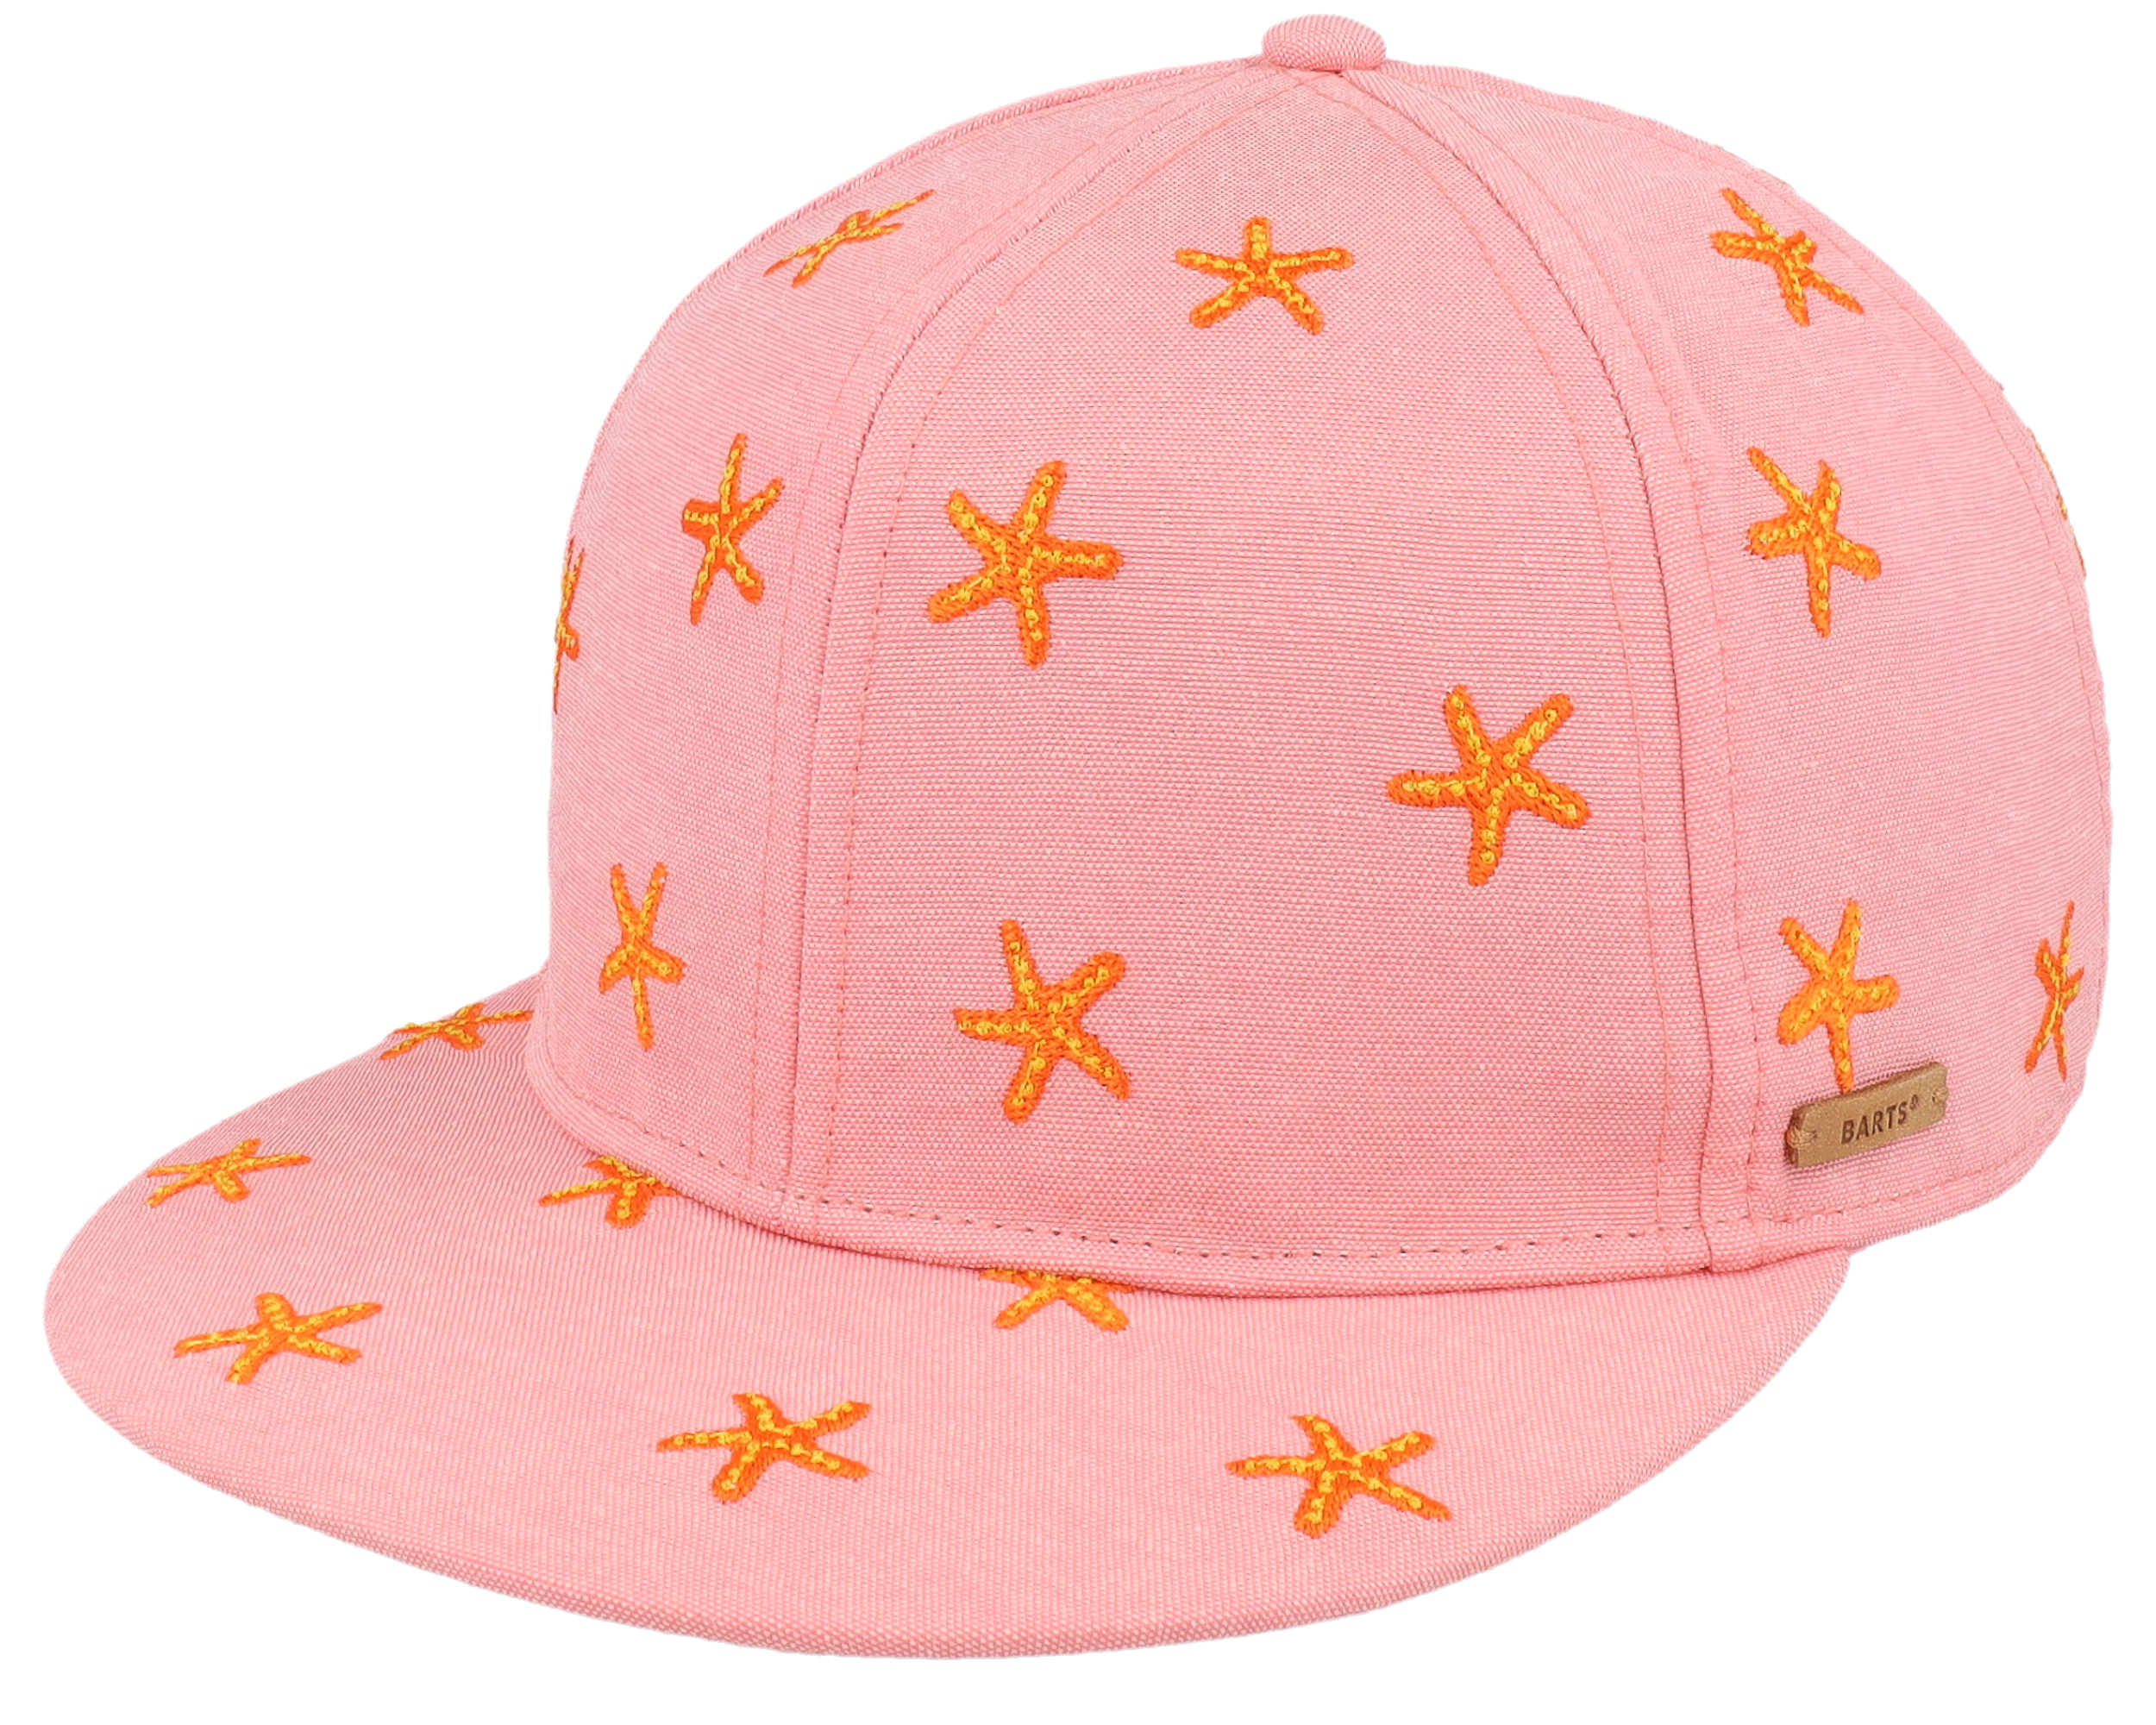 Kids Pauk Pink Barts cap - Cap Snapback